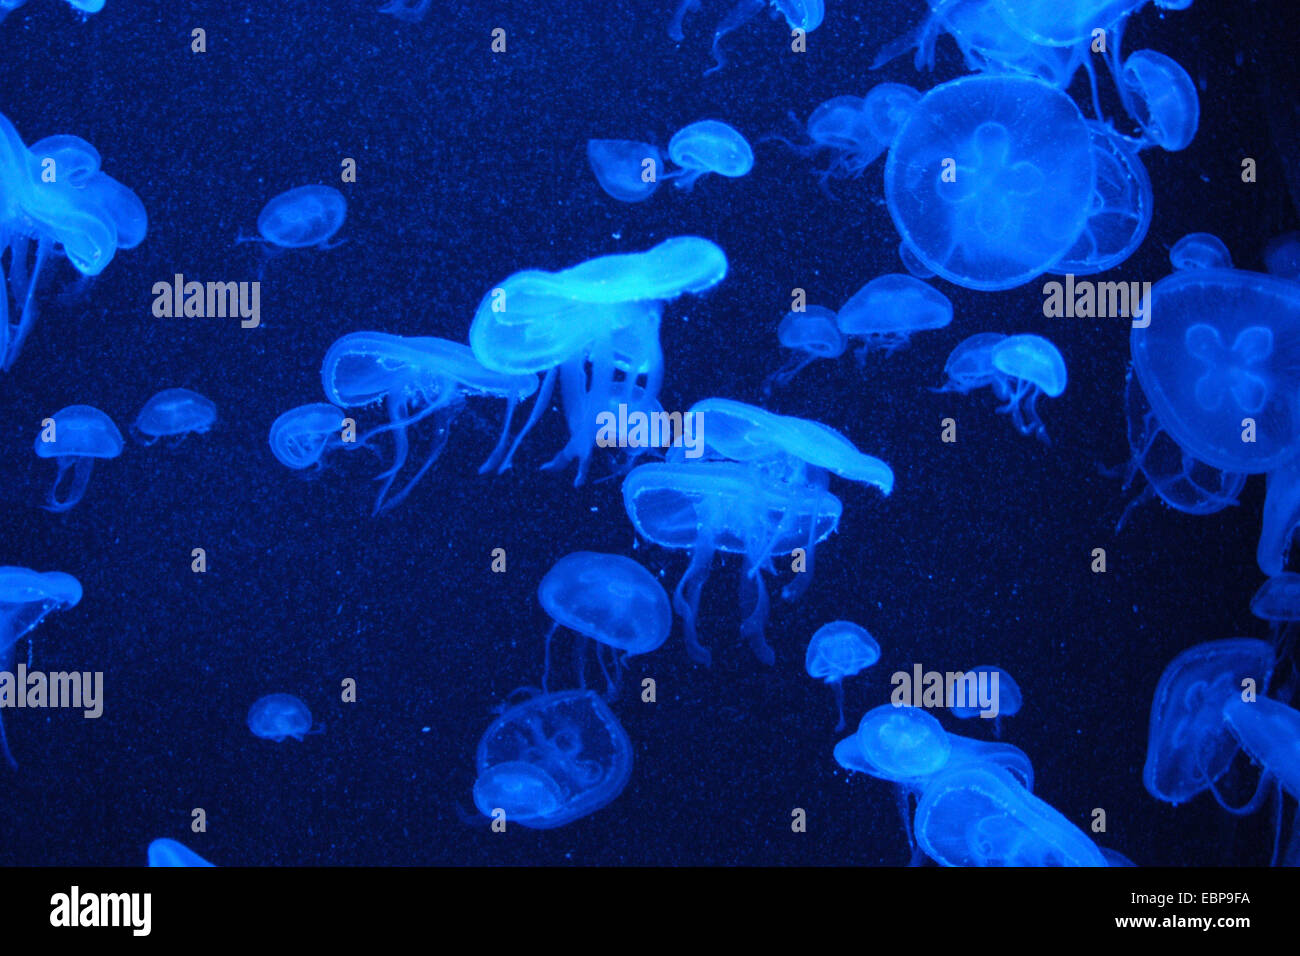 Moon jellyfishes (Aurelia aurita) at Schonbrunn Zoo in Vienna, Austria. Stock Photo